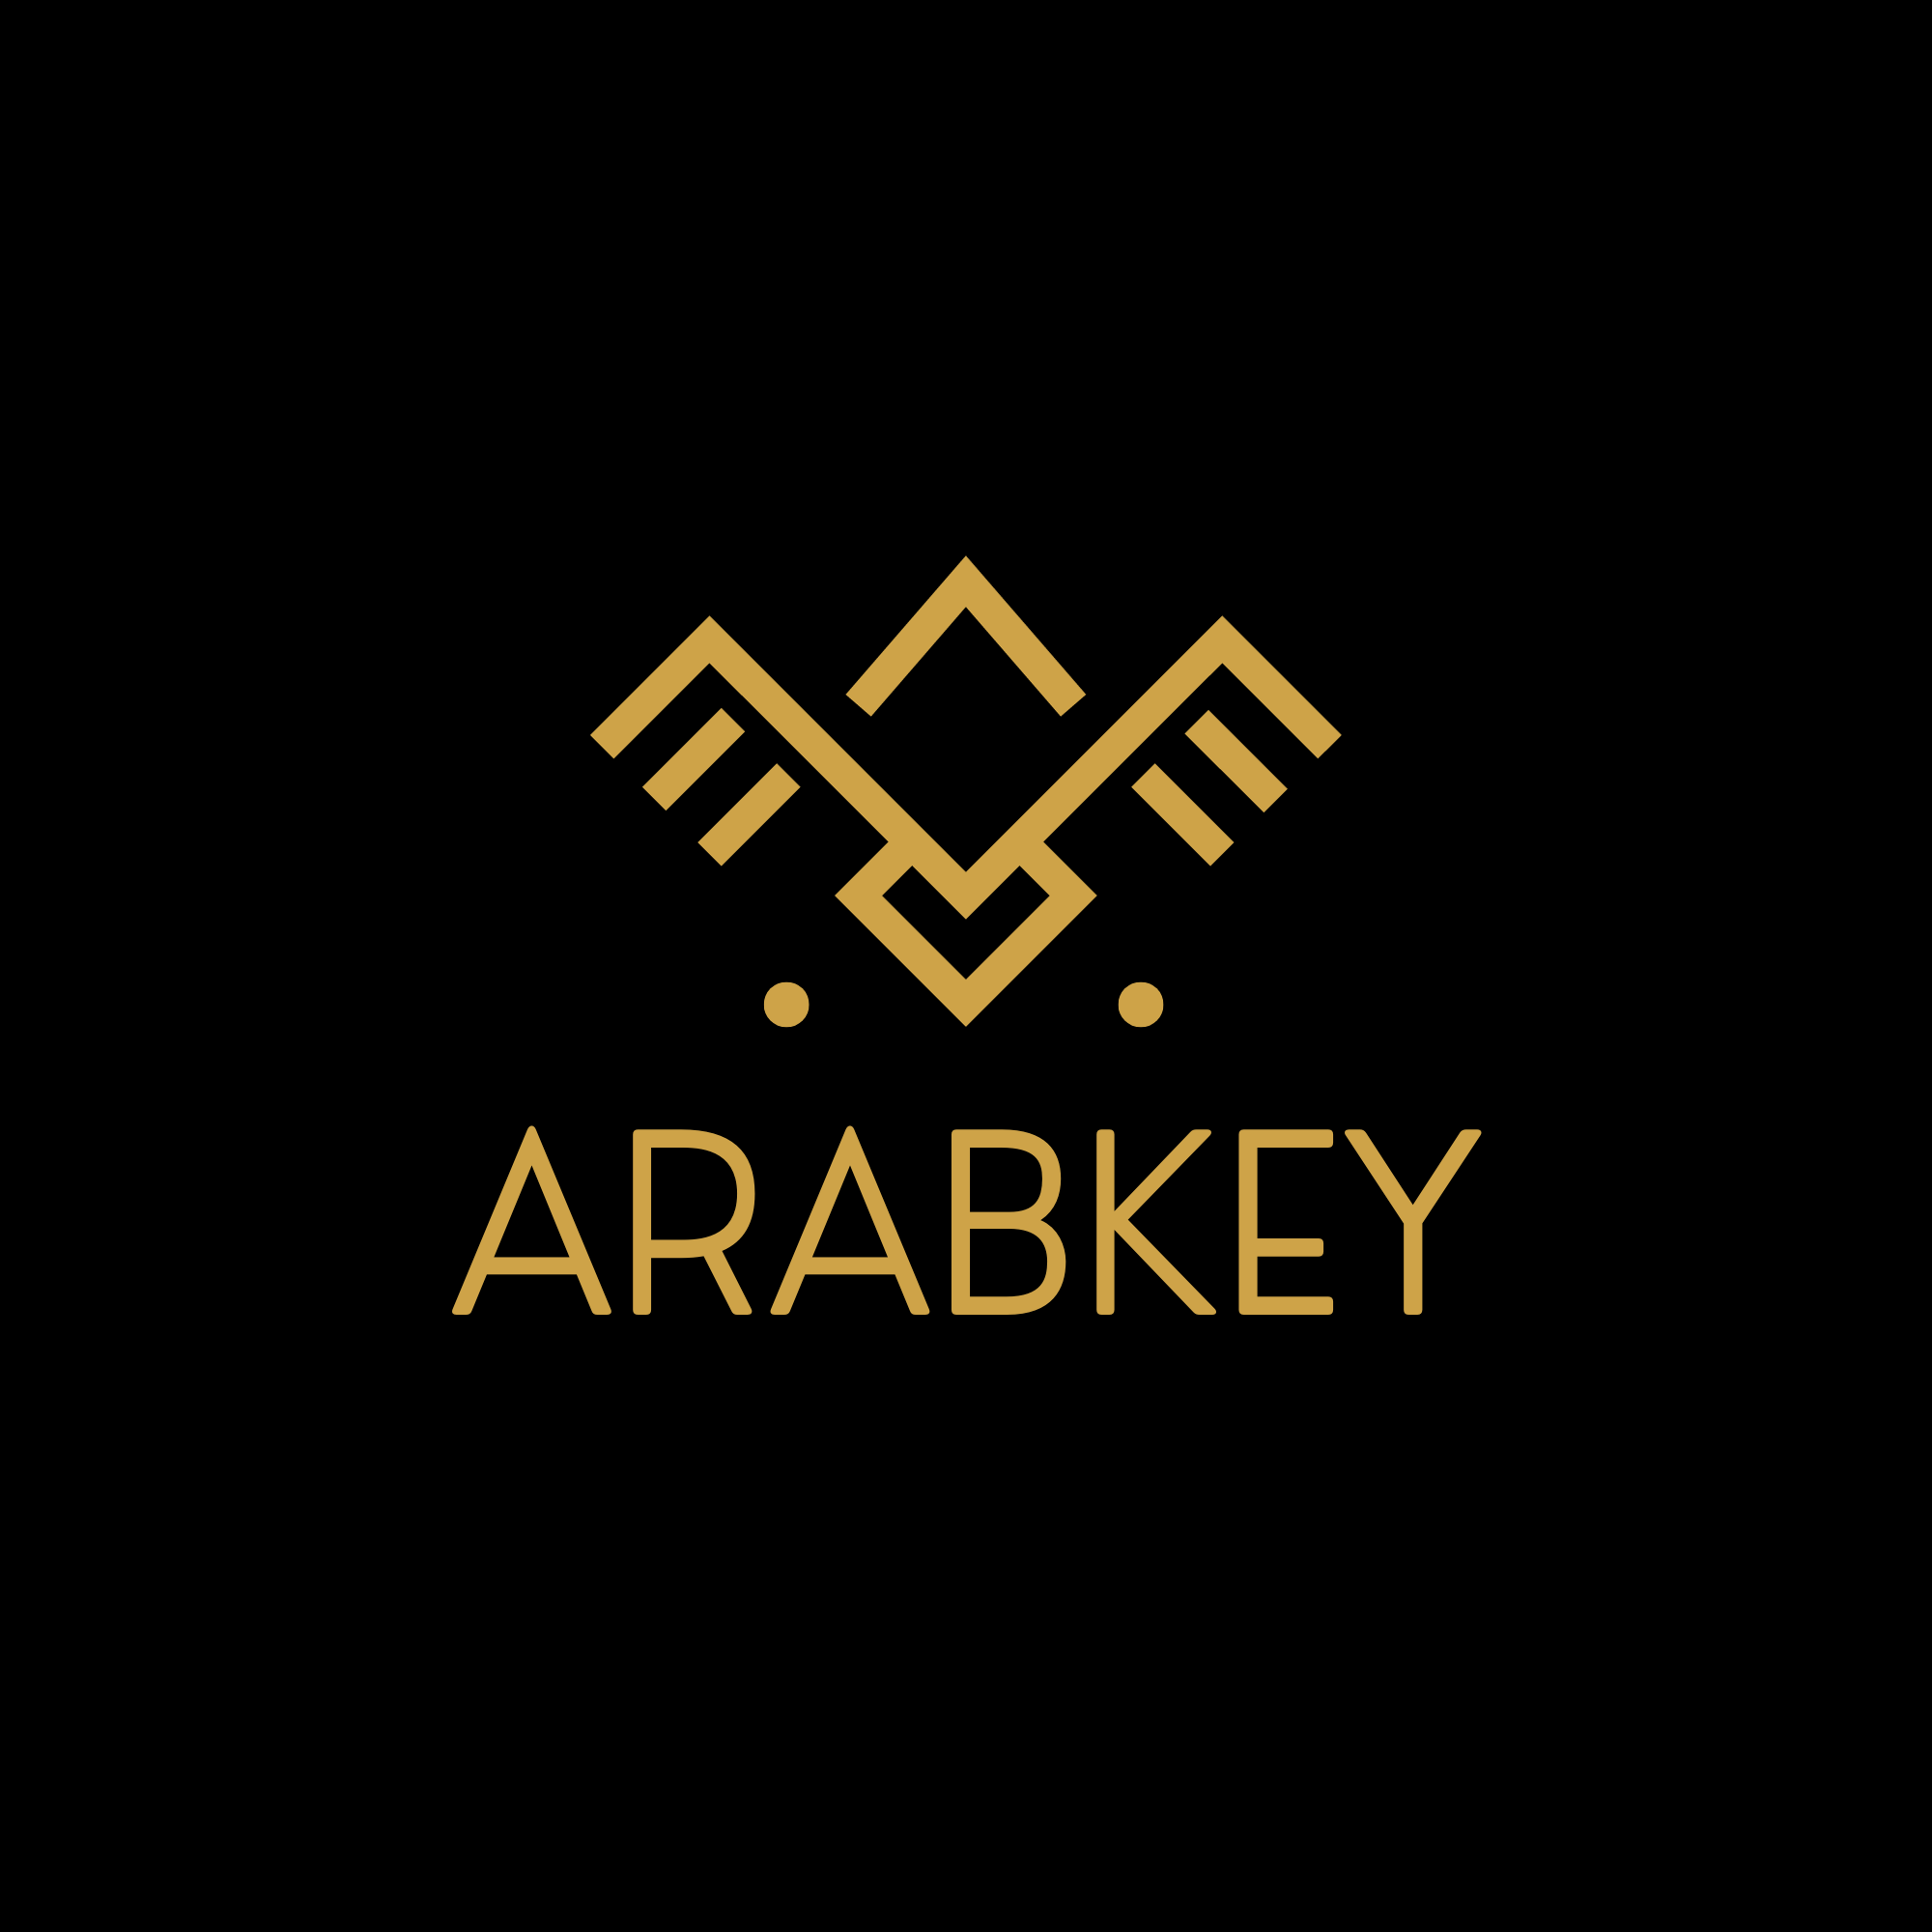 ARABKEY